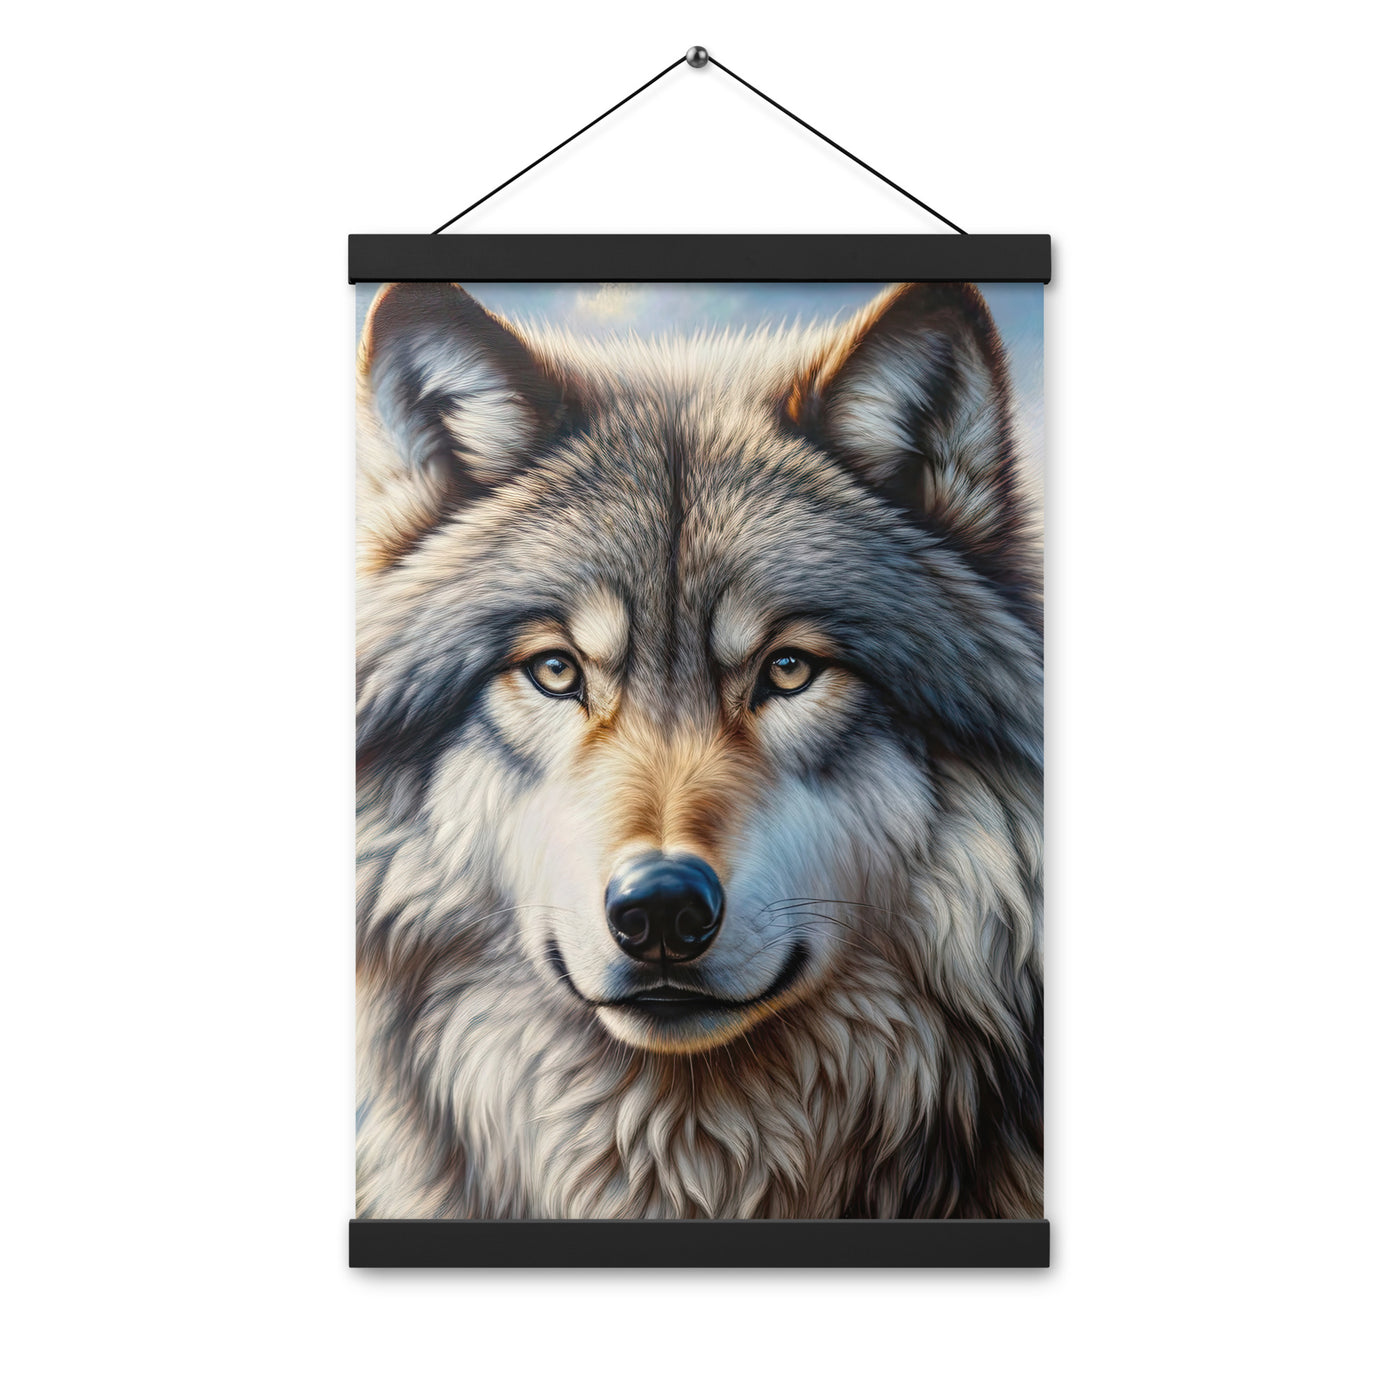 Porträt-Ölgemälde eines prächtigen Wolfes mit faszinierenden Augen (AN) - Premium Poster mit Aufhängung xxx yyy zzz 30.5 x 45.7 cm